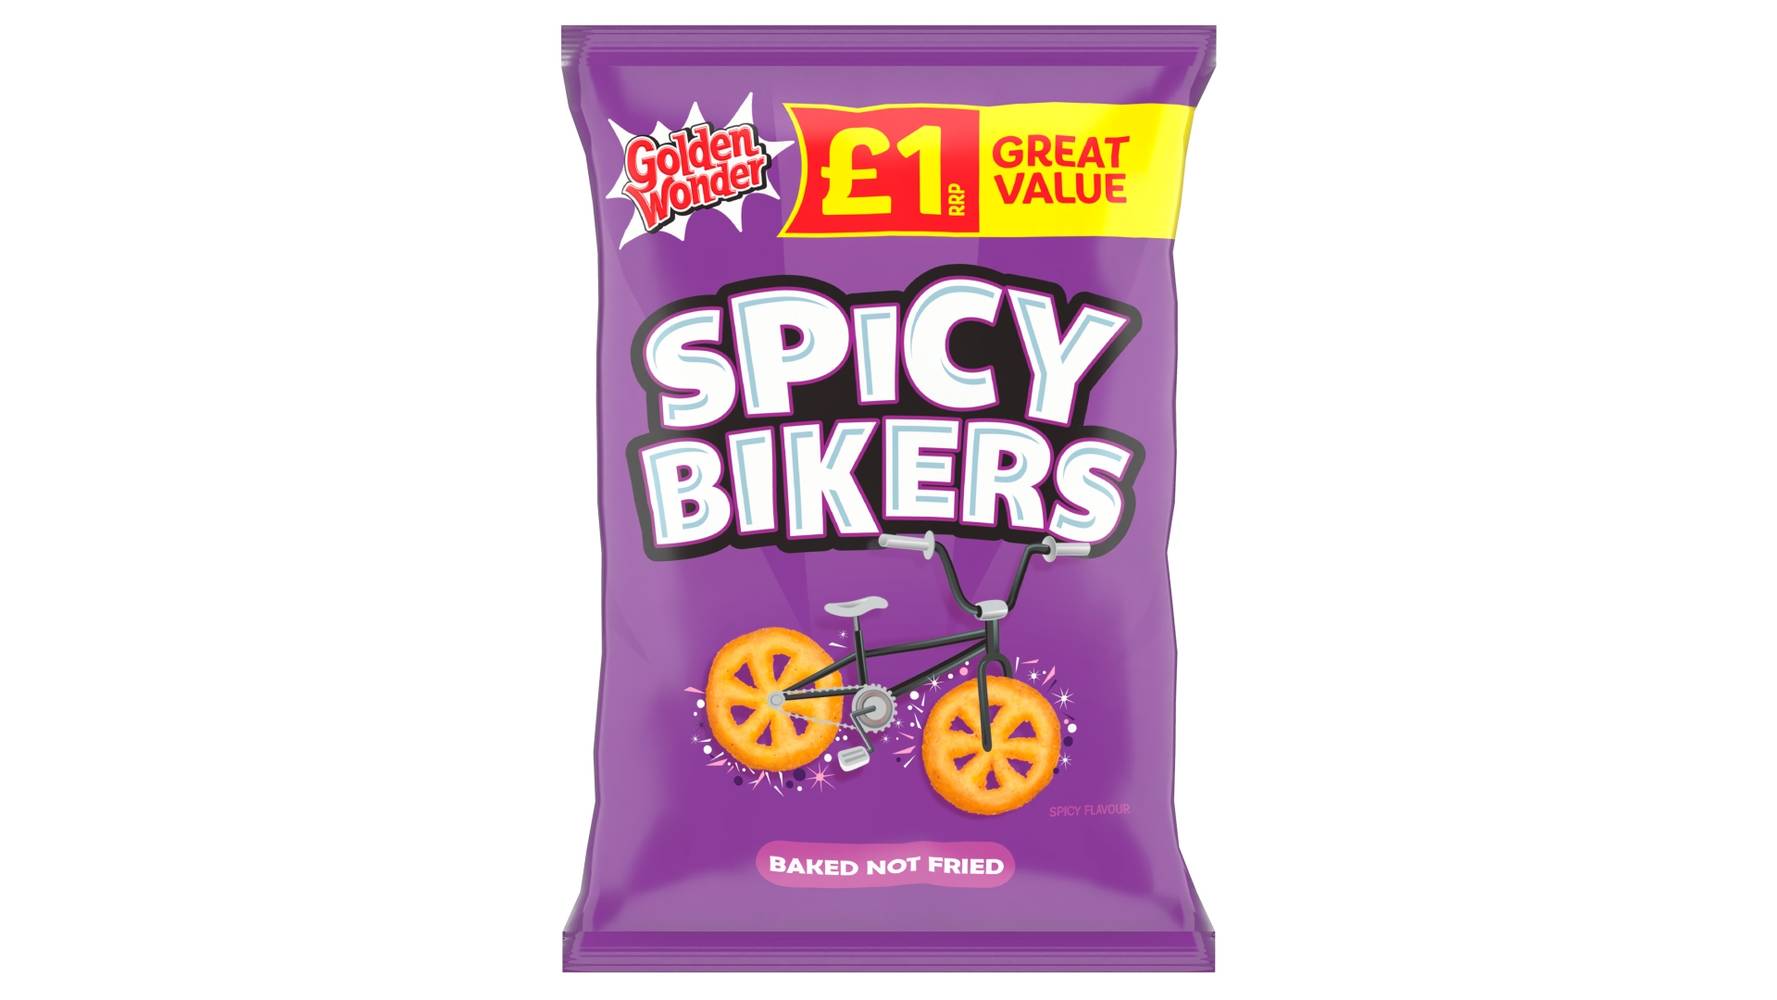 Golden Wonder Spicy Bikers